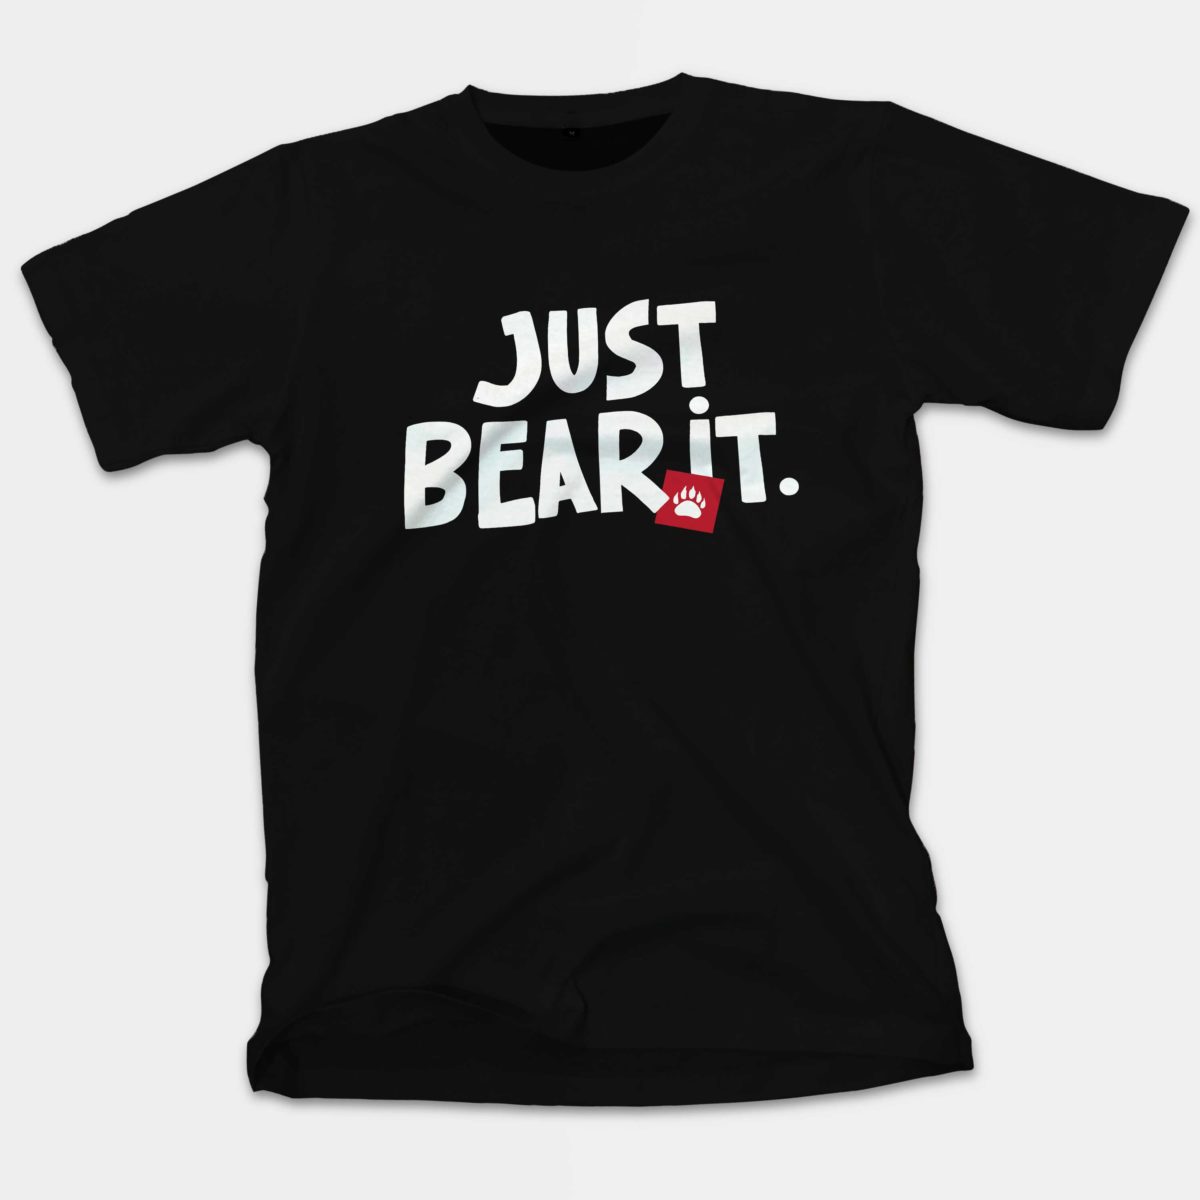 Just Bear It Black